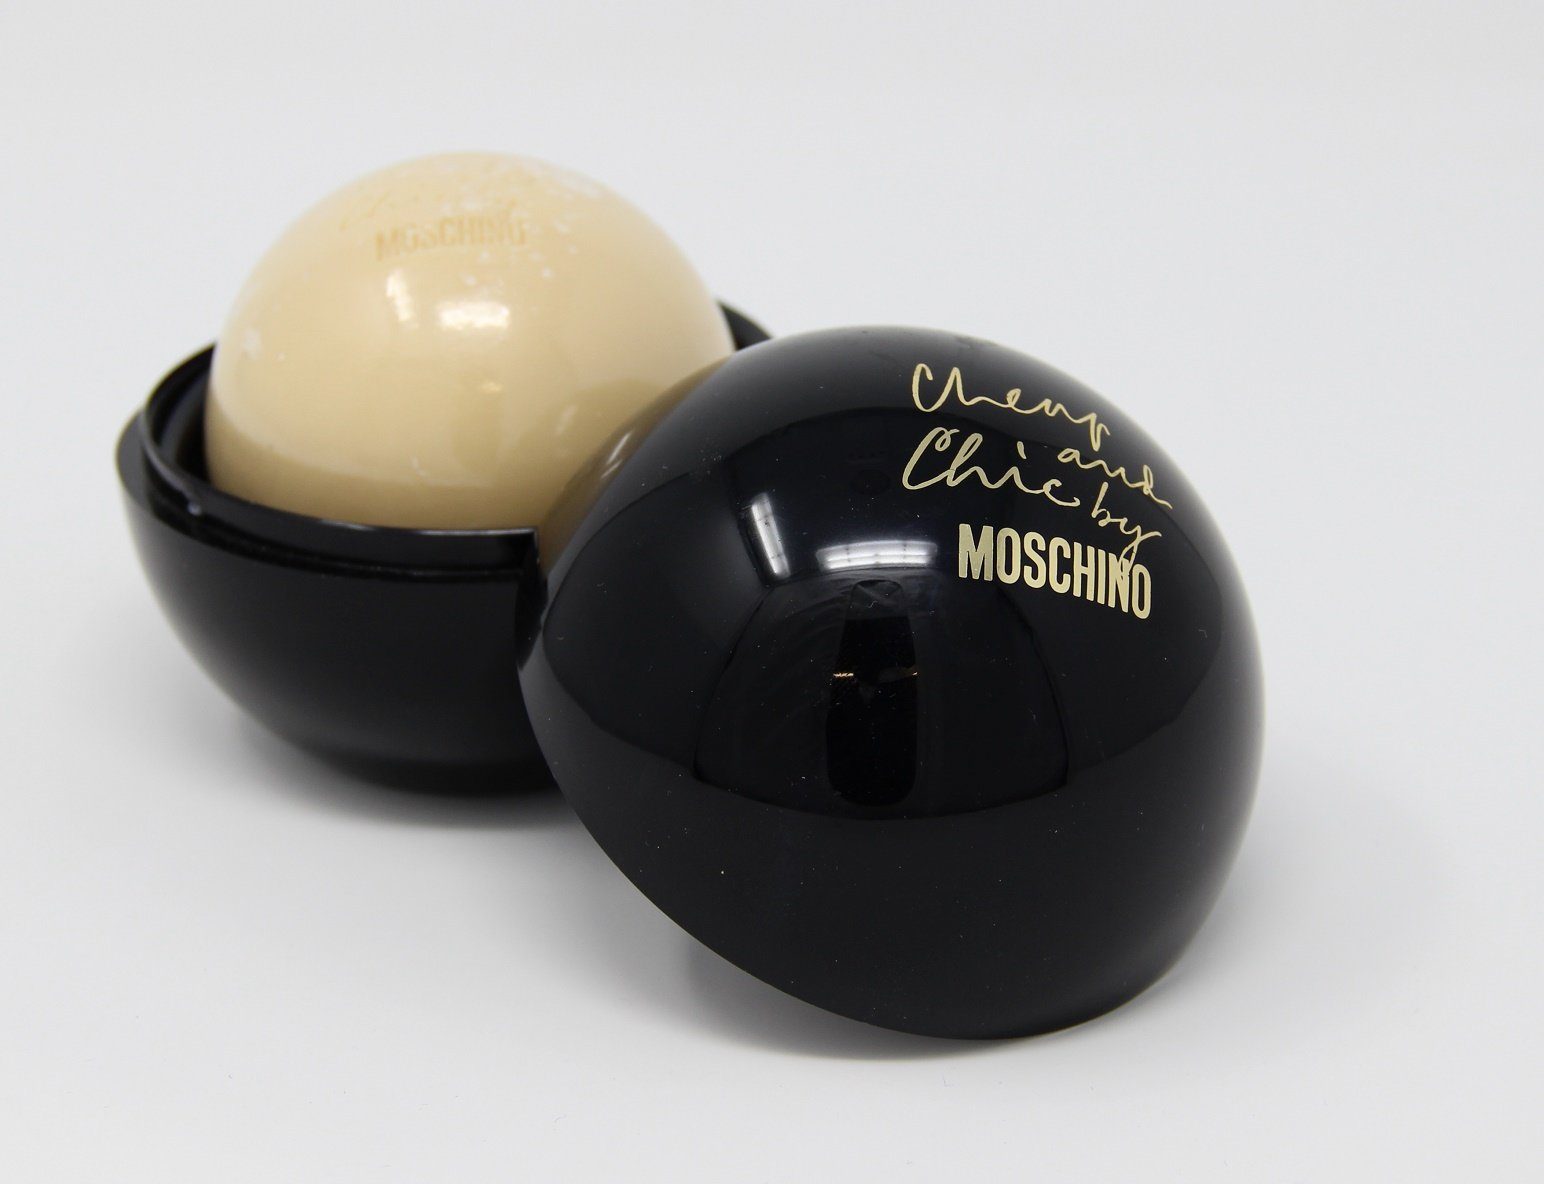 Moschino Handseife Moschino Chic Cheap Perfumed and Seife 100g